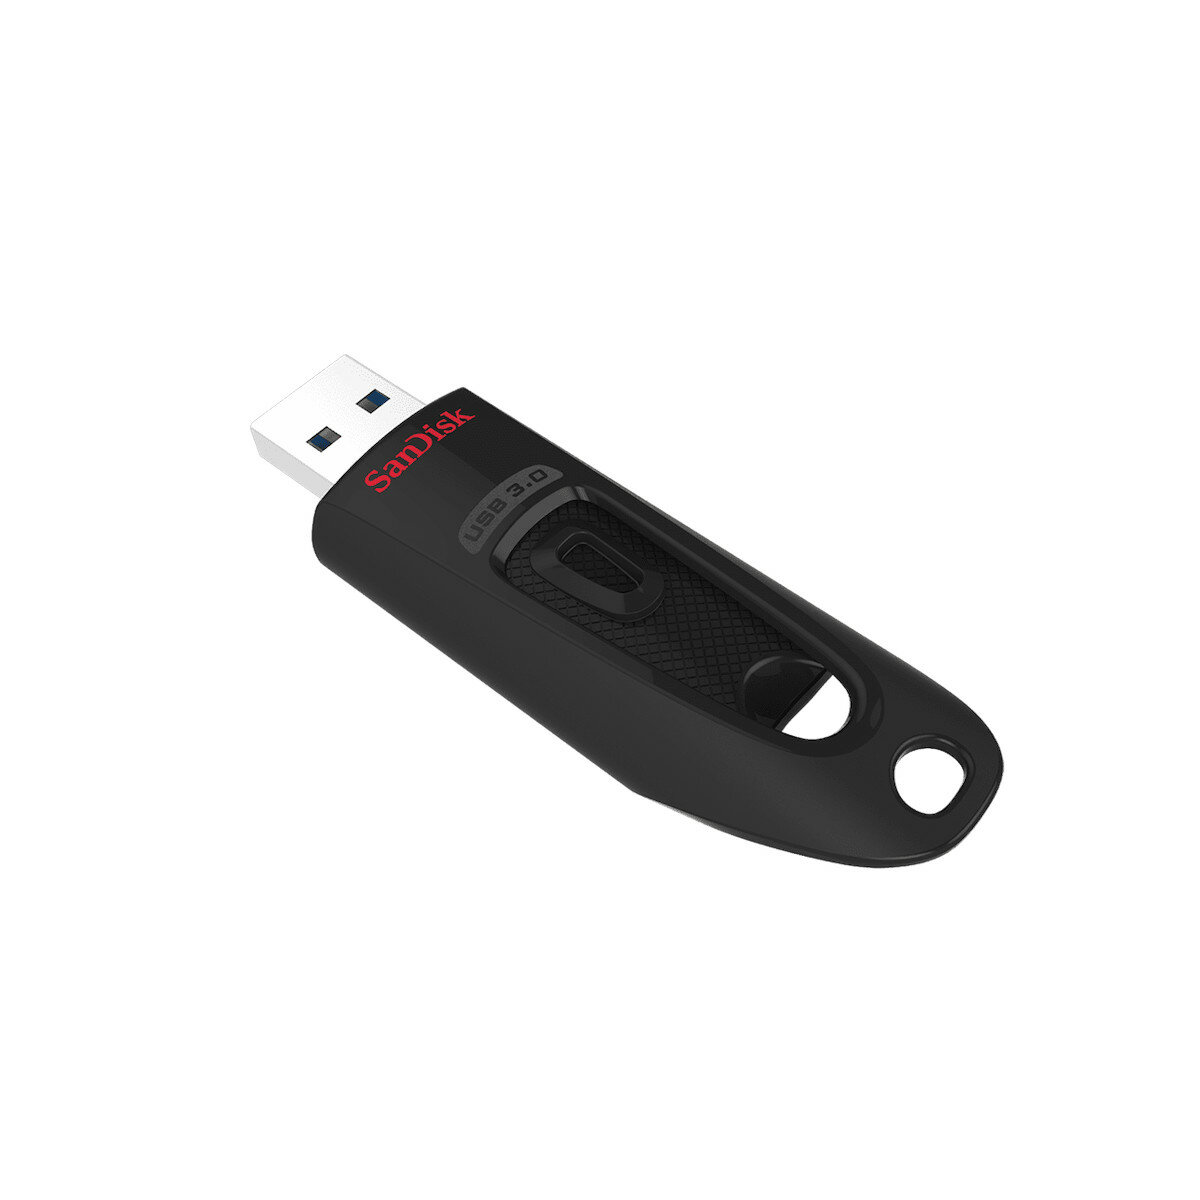 Pendrive SanDisk Ultra USB 3.0 128 GB widoczny tyłem z wysuniętym złączem